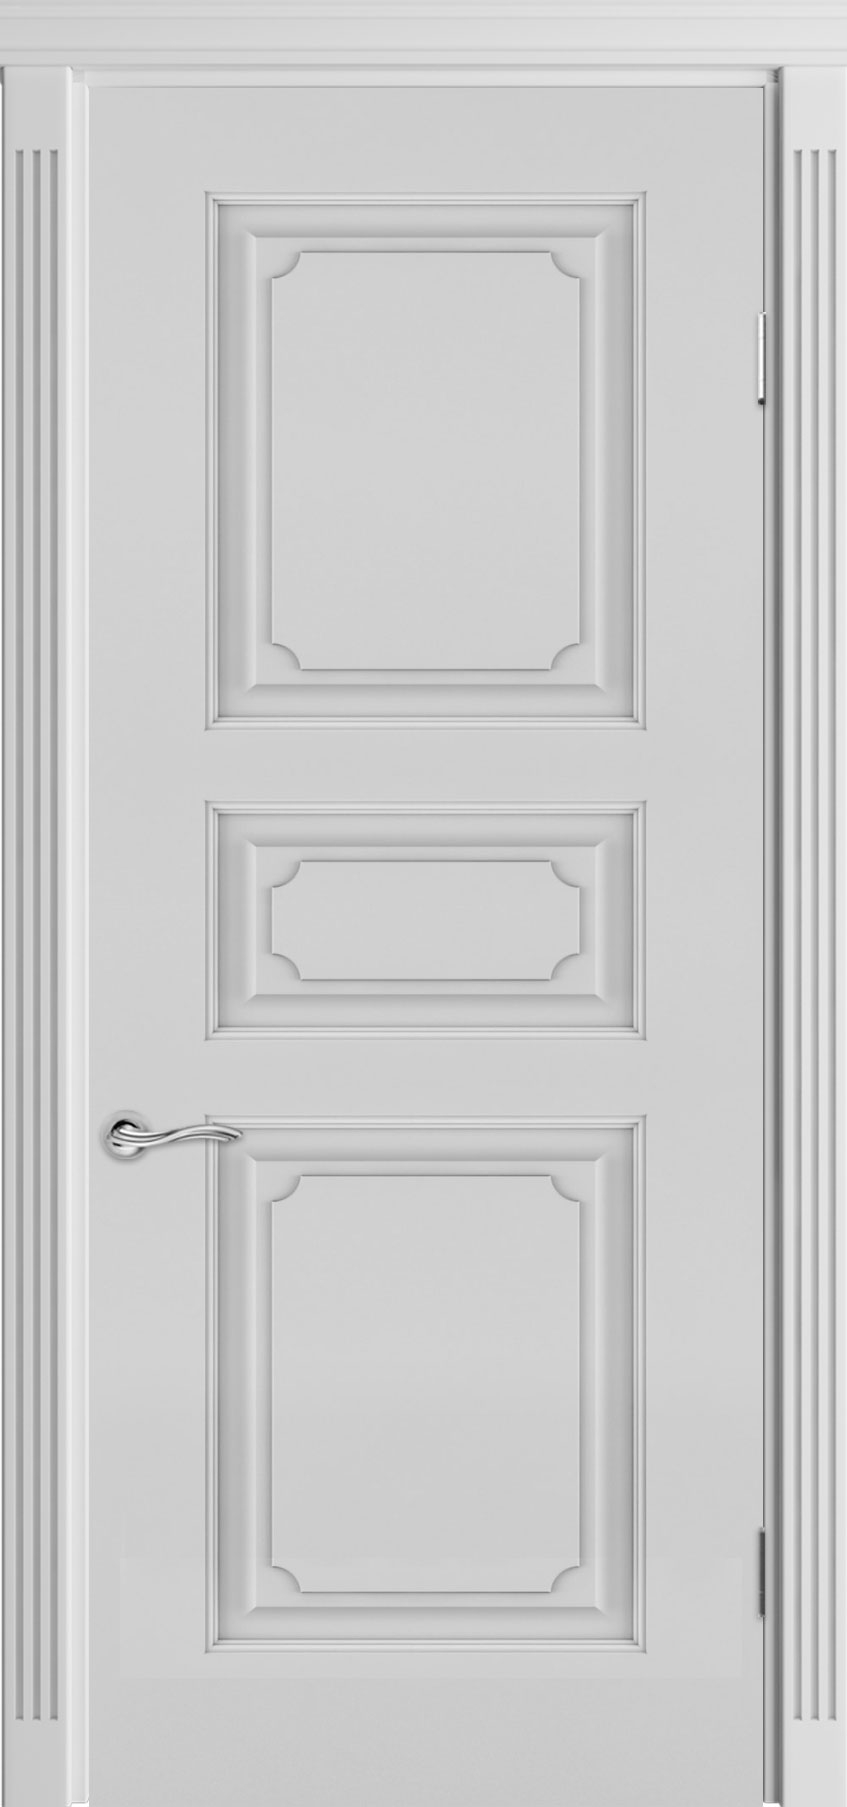 межкомнатные двери  Прованс Классика с фрезеровкой Алавус эмаль